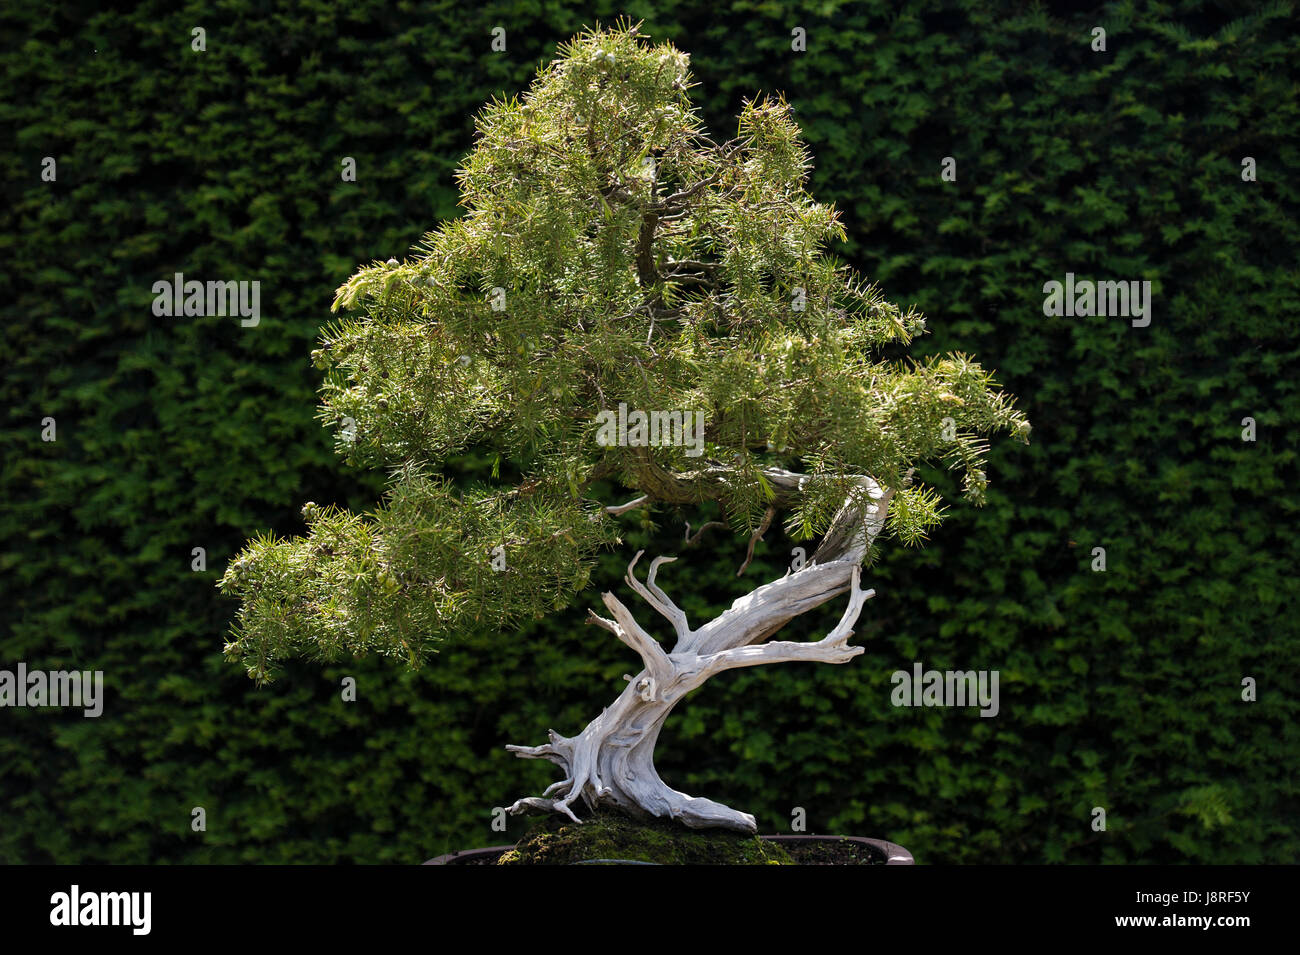 Juniper Bonsai tree Stock Photo